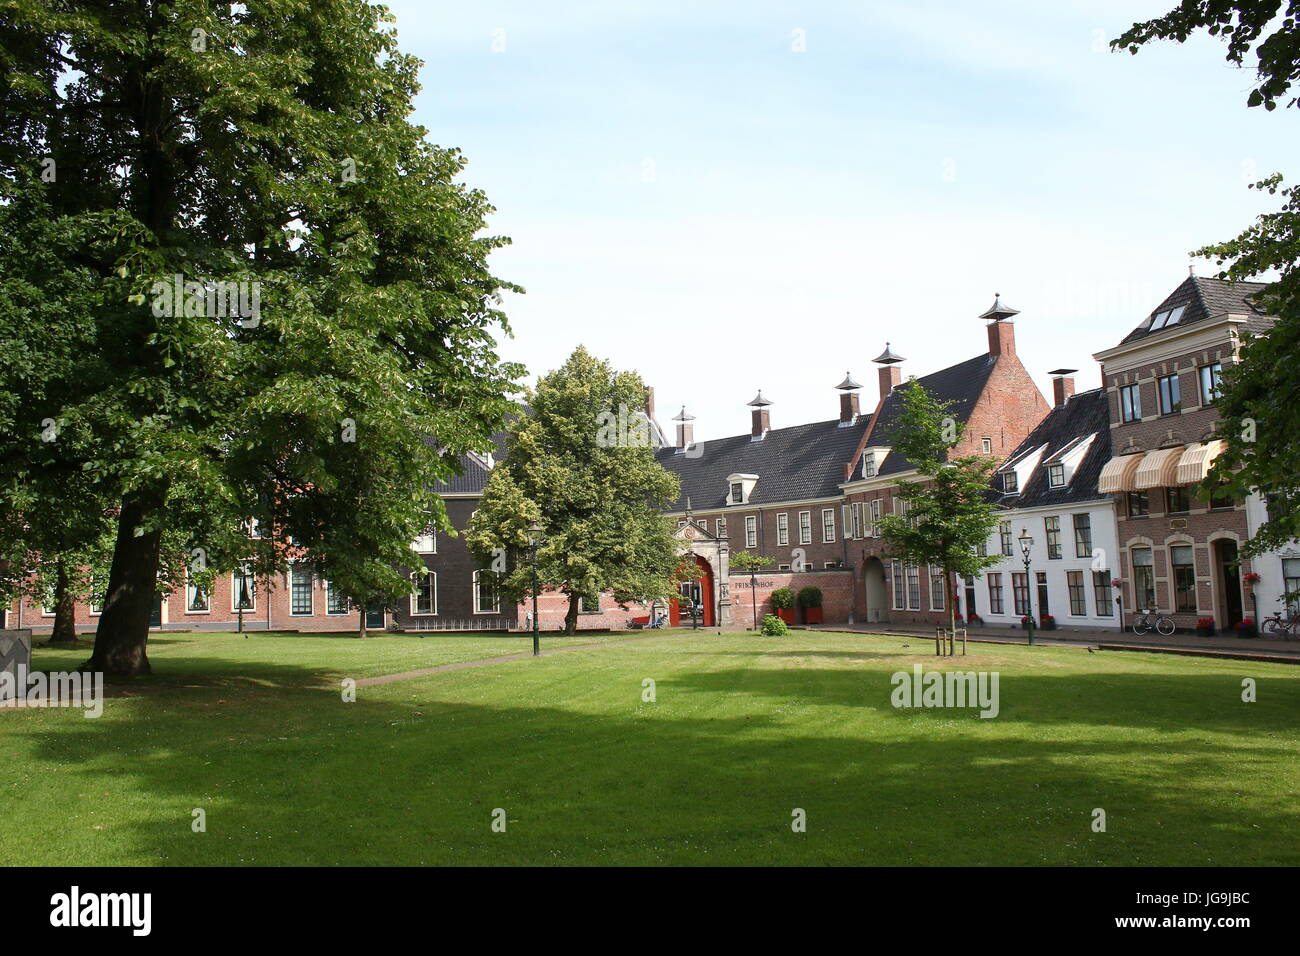 Martinikerhof Friedhof & Platz, zentrale Groningen, Niederlande im Sommer. Luxuriöses Hotel Prinsenhof Hintergrund. Stockfoto